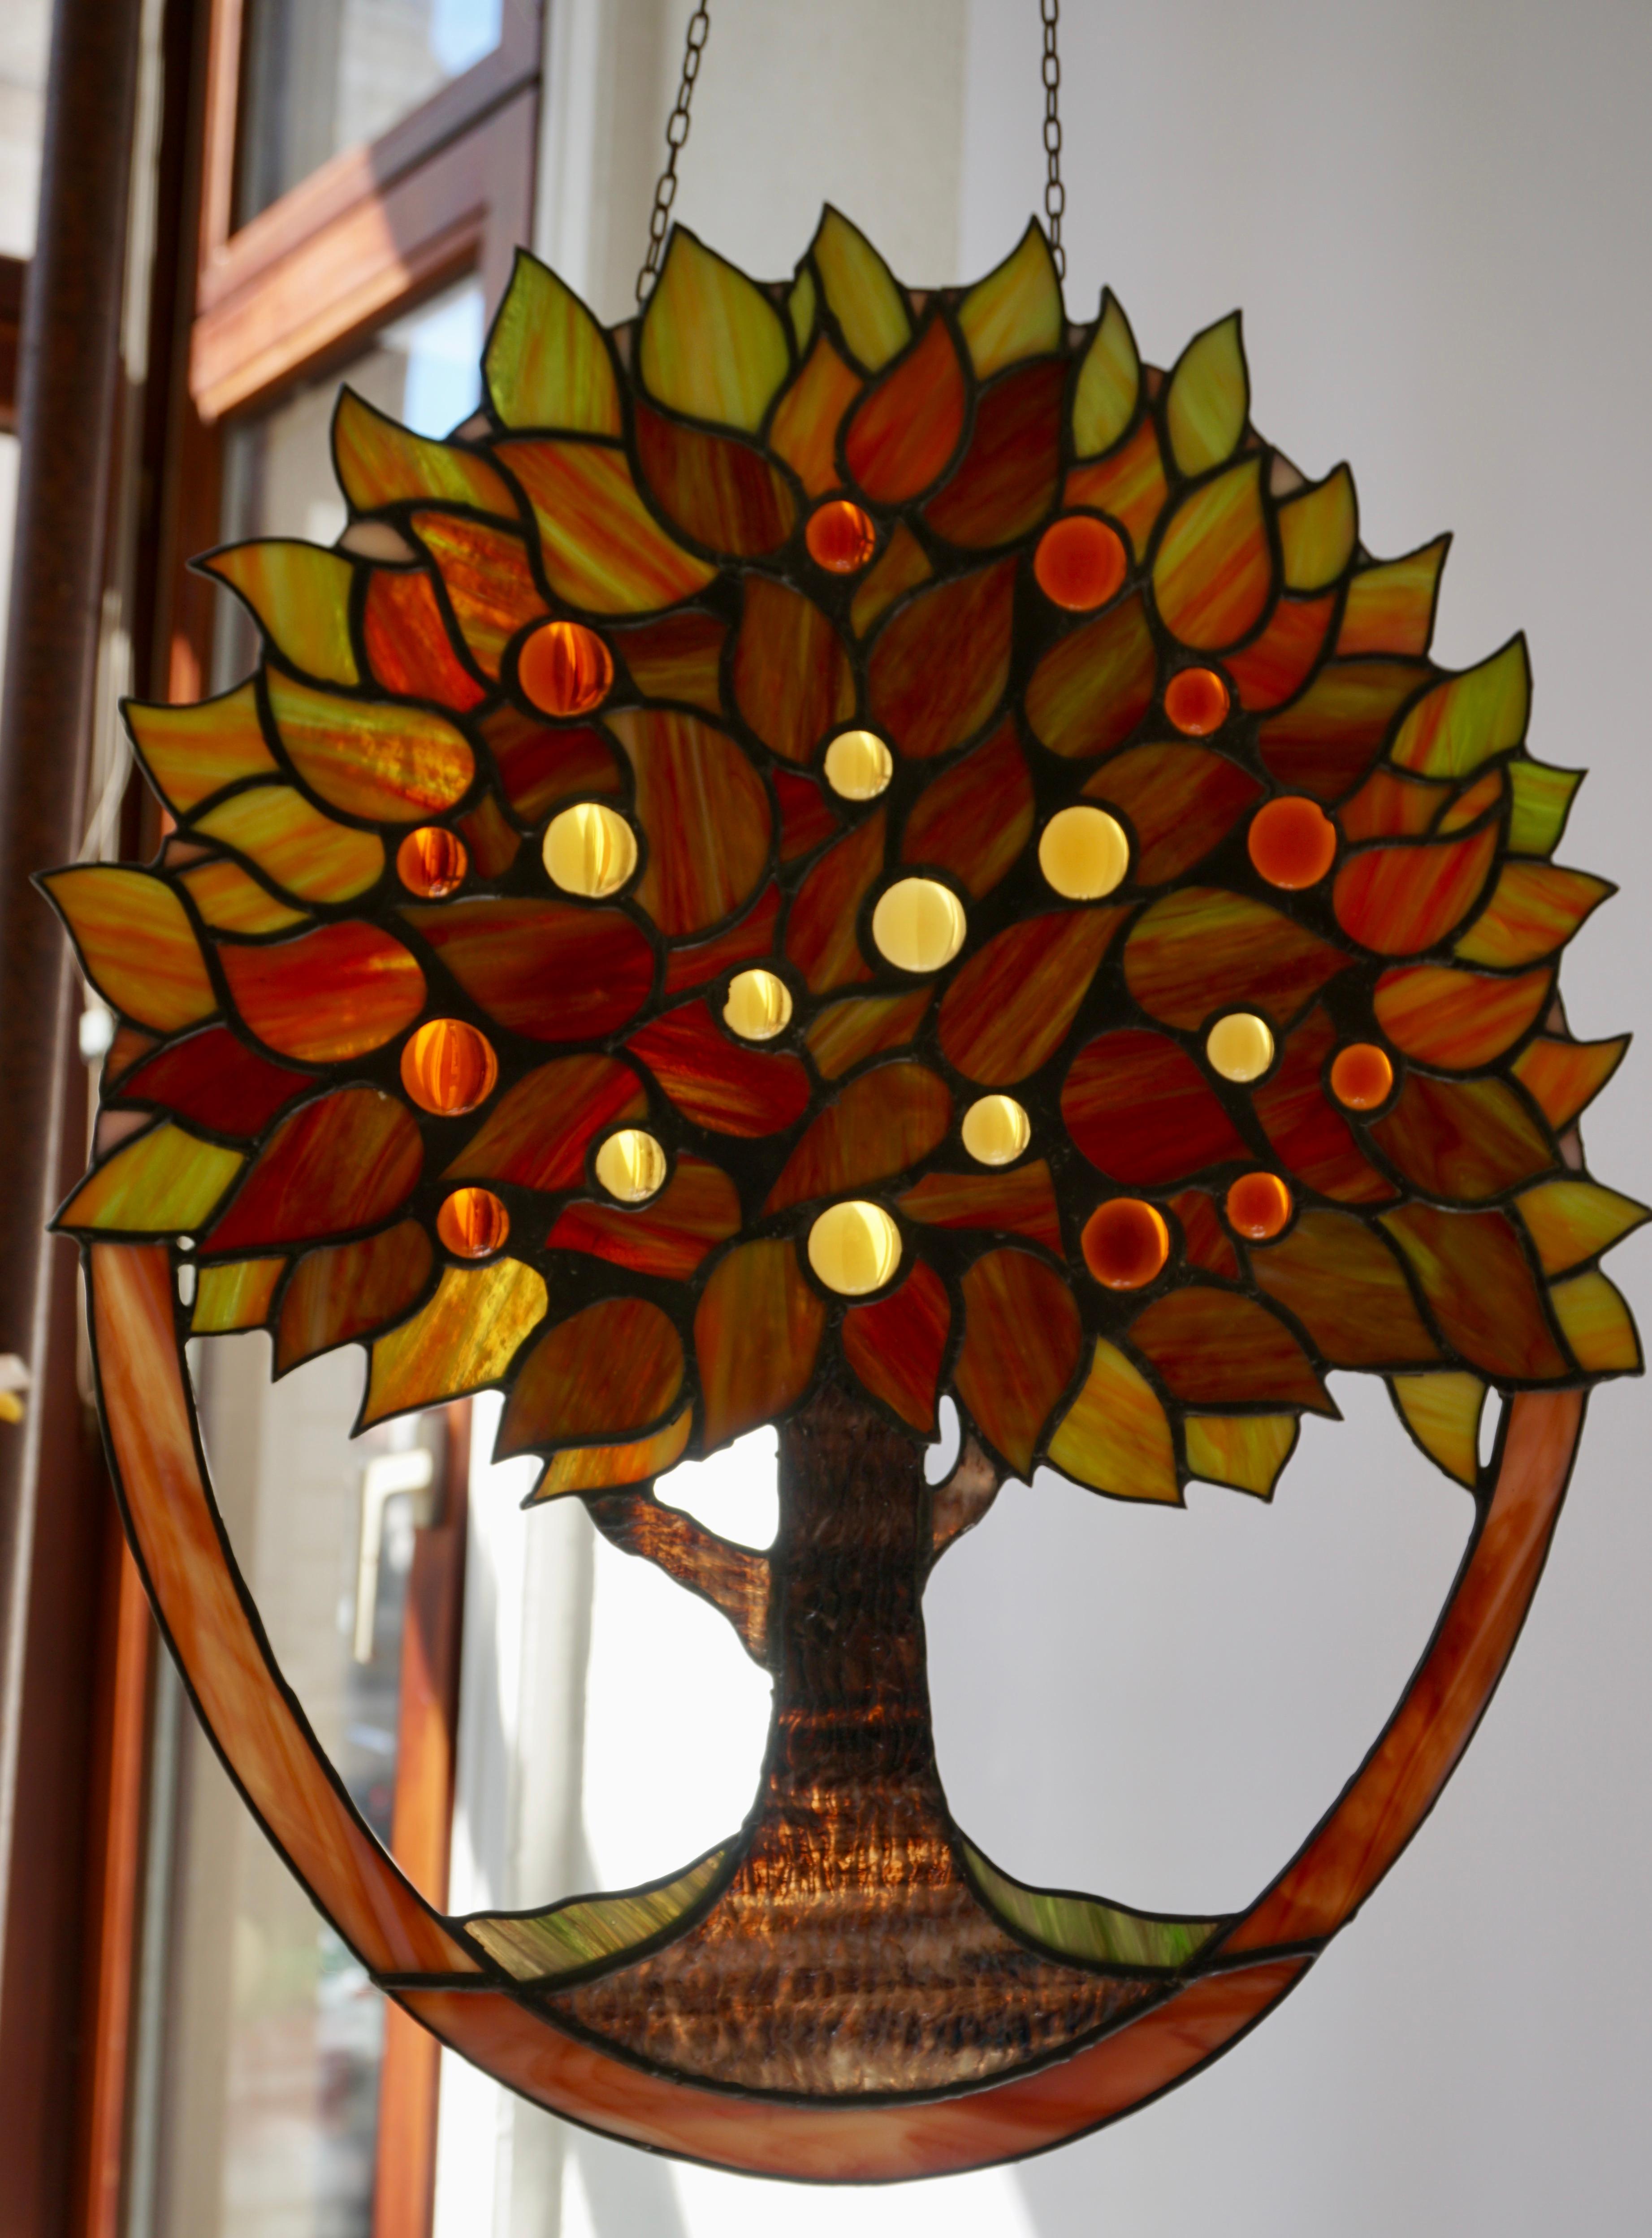 Offrant ce magnifique panneau de vitrail sur chaîne. En forme d'arbre floral aux couleurs et motifs variés.
Il existe également de nombreuses nuances de vert, de rouge, de jaune et d'orange.
Mesures : Hauteur 45 cm.
Largeur 39 cm.